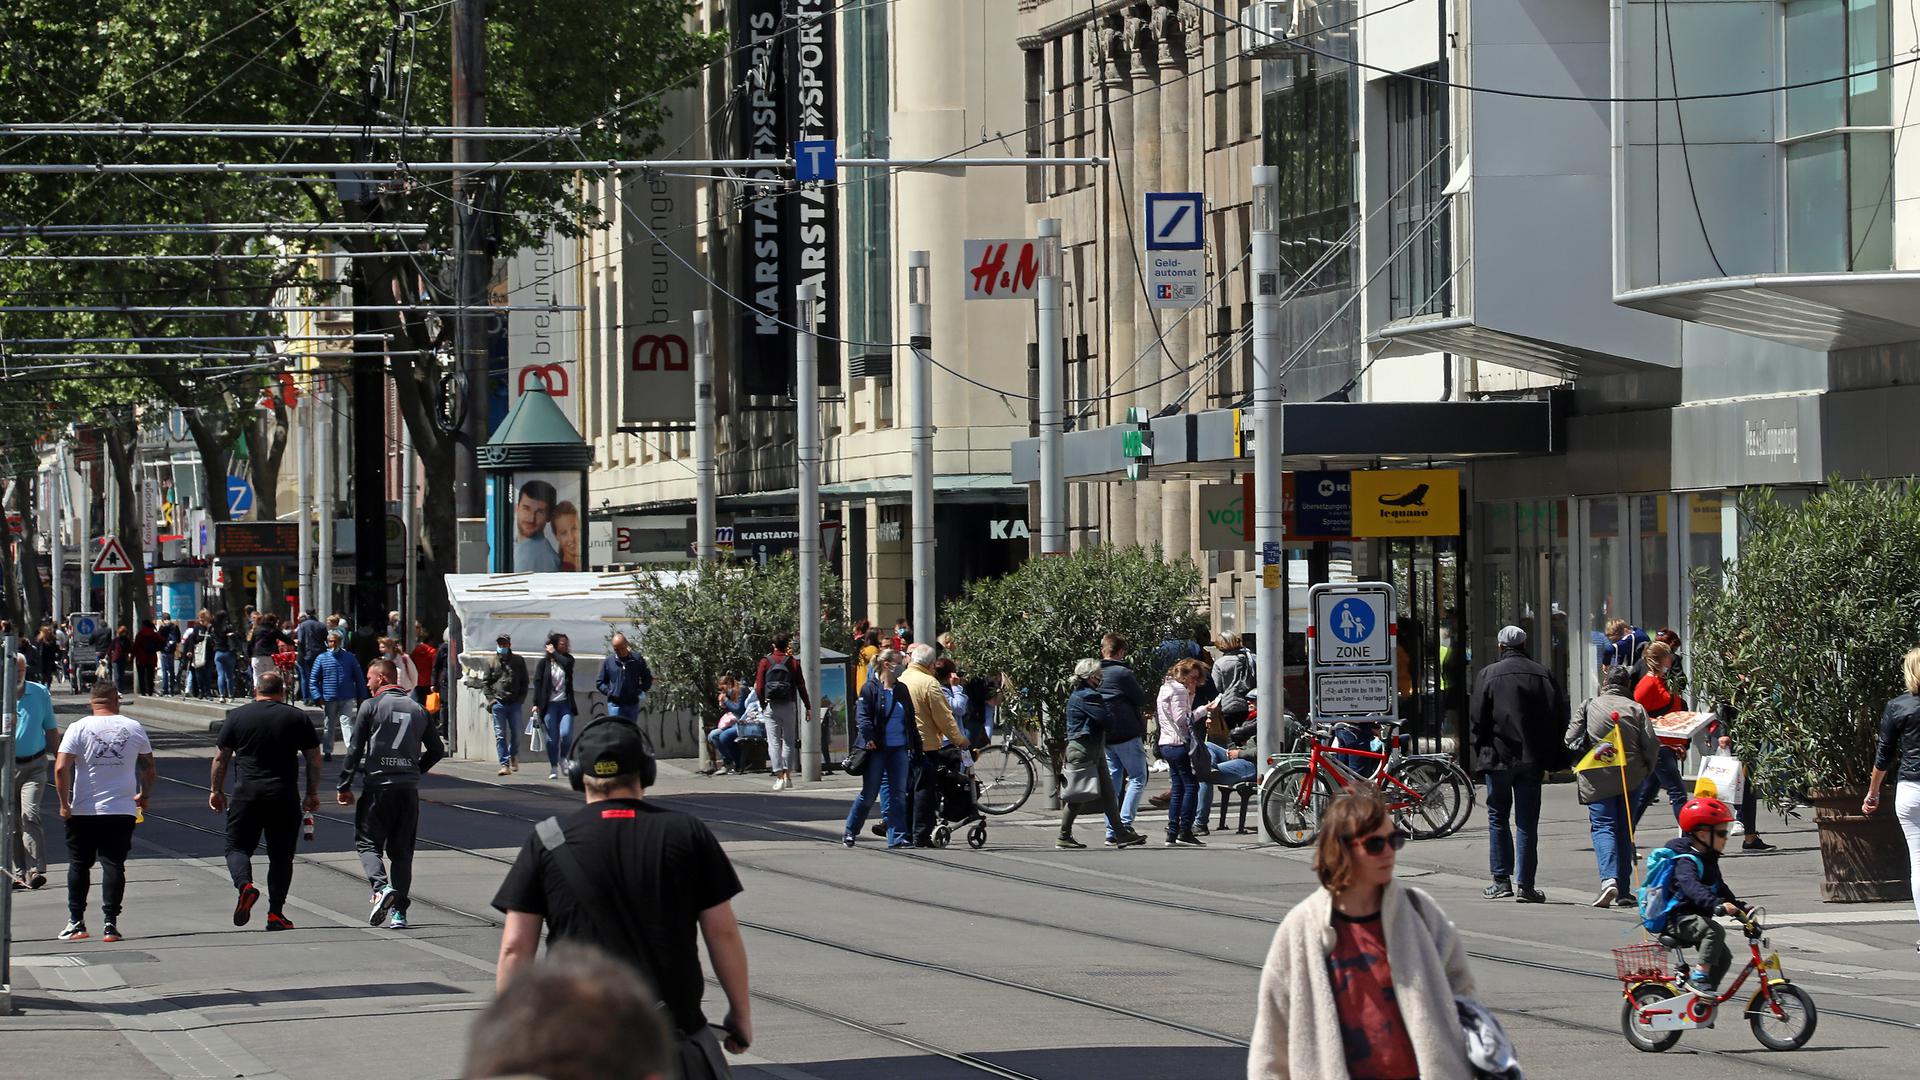 Trotz bestehender Einschränkungen bei Shopping-Erlebnis kehren die Menschen in die Kaiserstraße in Karlsruhe zurück. Beim Bummeln stoßen sie auf Warteschlangen vor Geschäften.